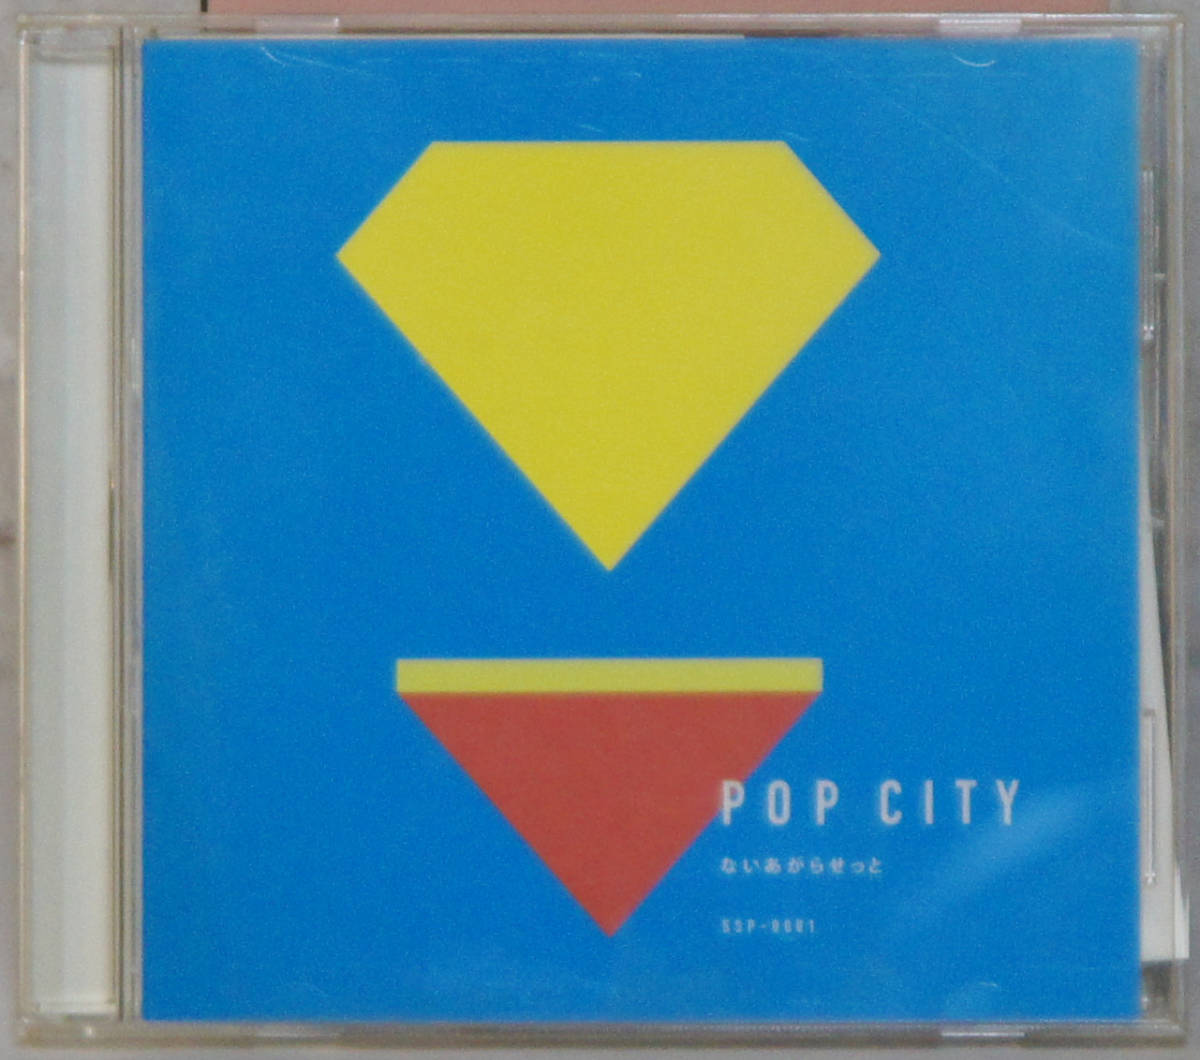 帯付美盤CD ● ないあがらせと / POP CITY ●SSP-0001 シティ・ポップ フォーク C157_画像1